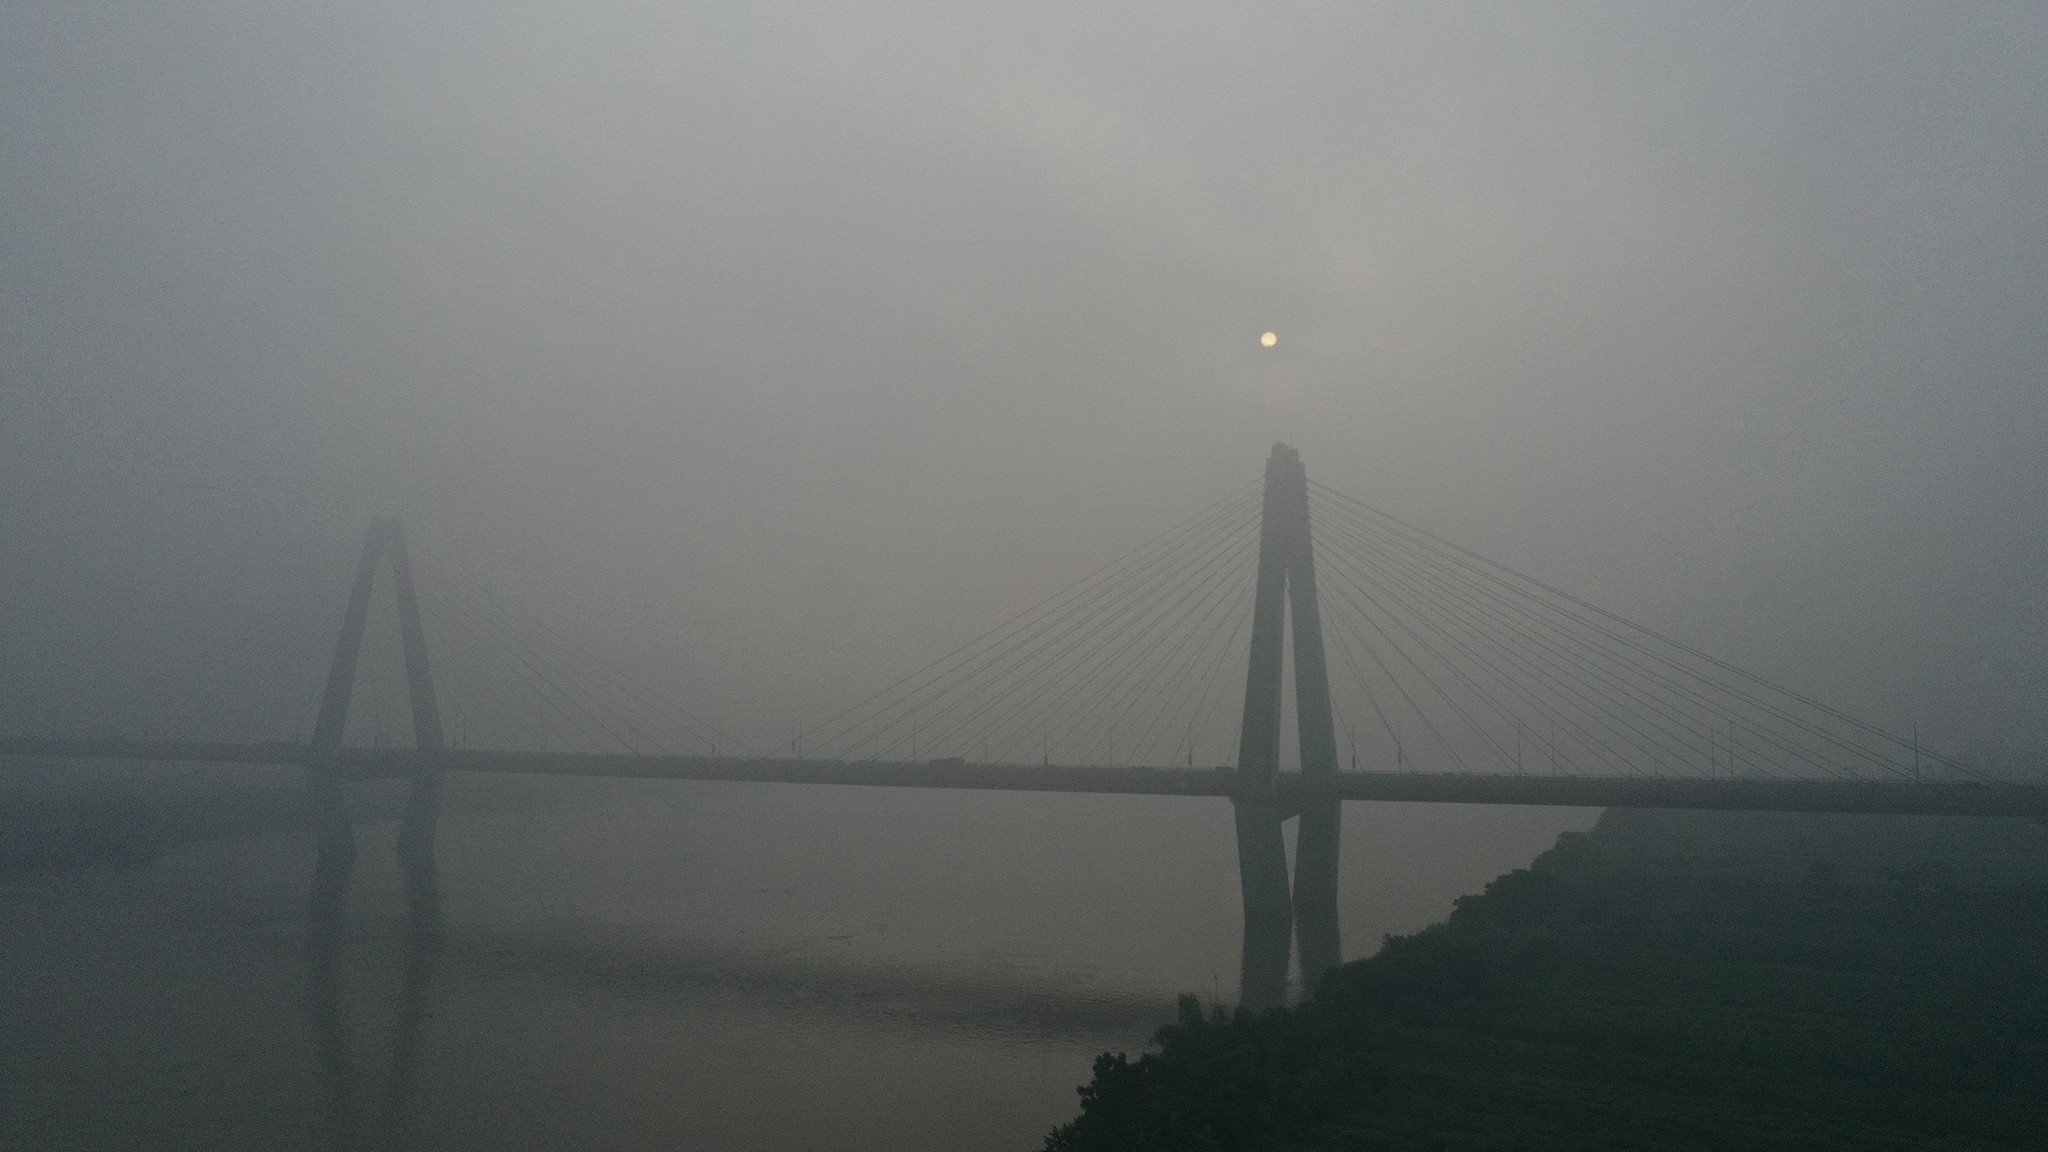 Hà Nội mù mịt do chất lượng không khí xấu nhìn từ cầu Nhật Tân